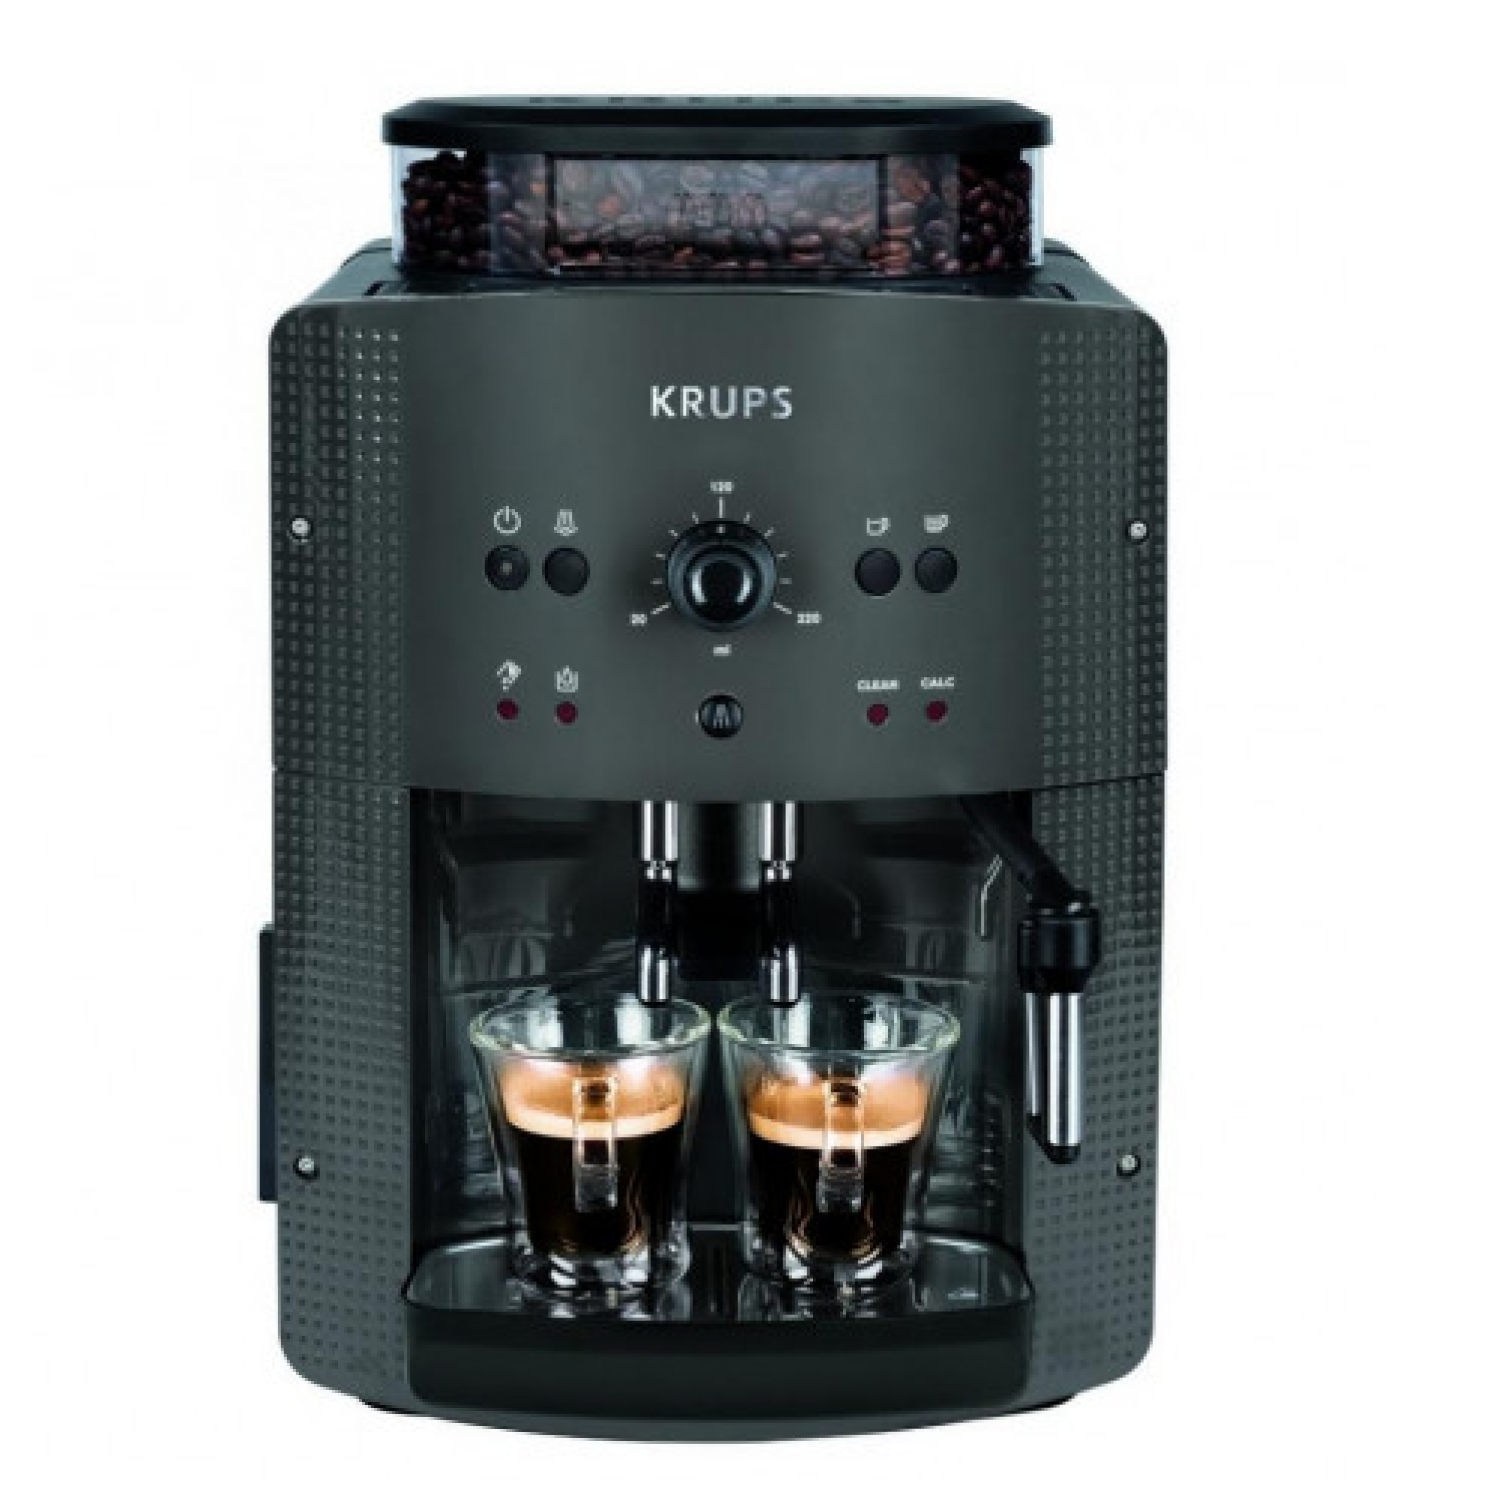 Автоматическая кофемашина Krups ESSENTIAL EA810B70, цвет серый